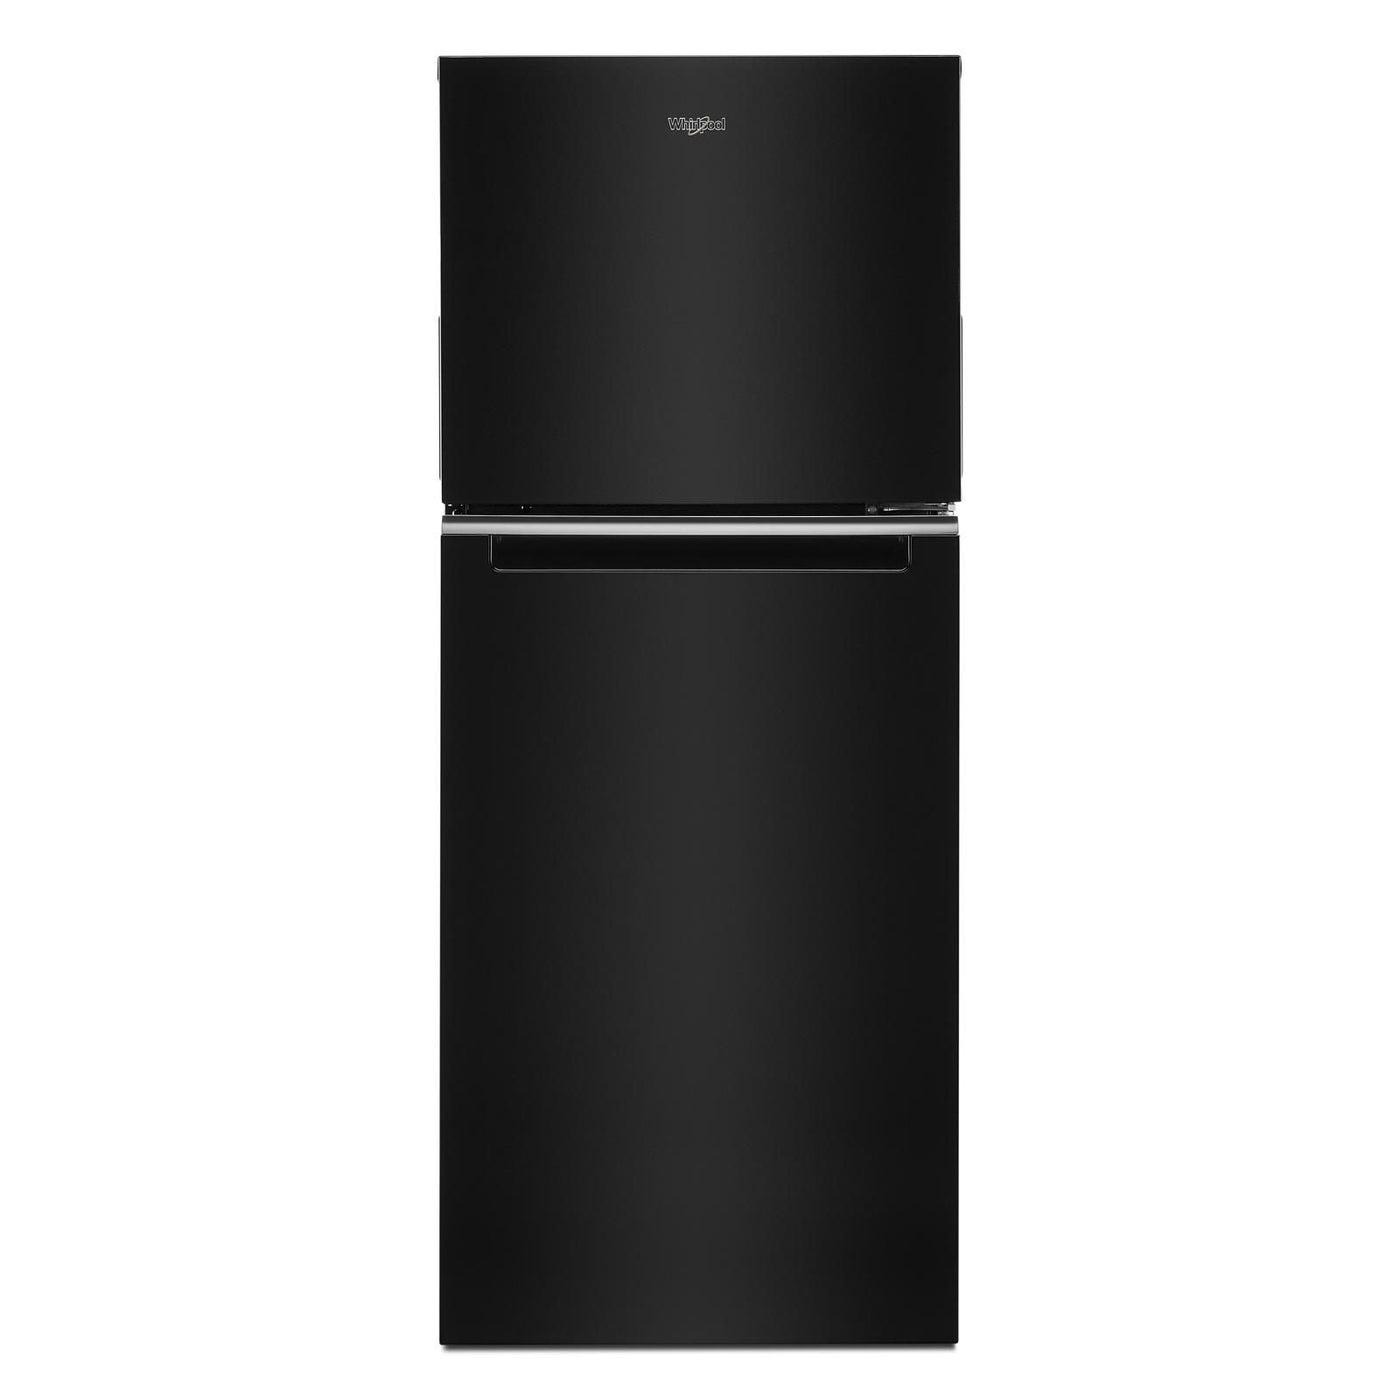 Whirlpool Black Top Freezer Refrigerator (11.6 Cu.Ft.) - WRT312CZJB